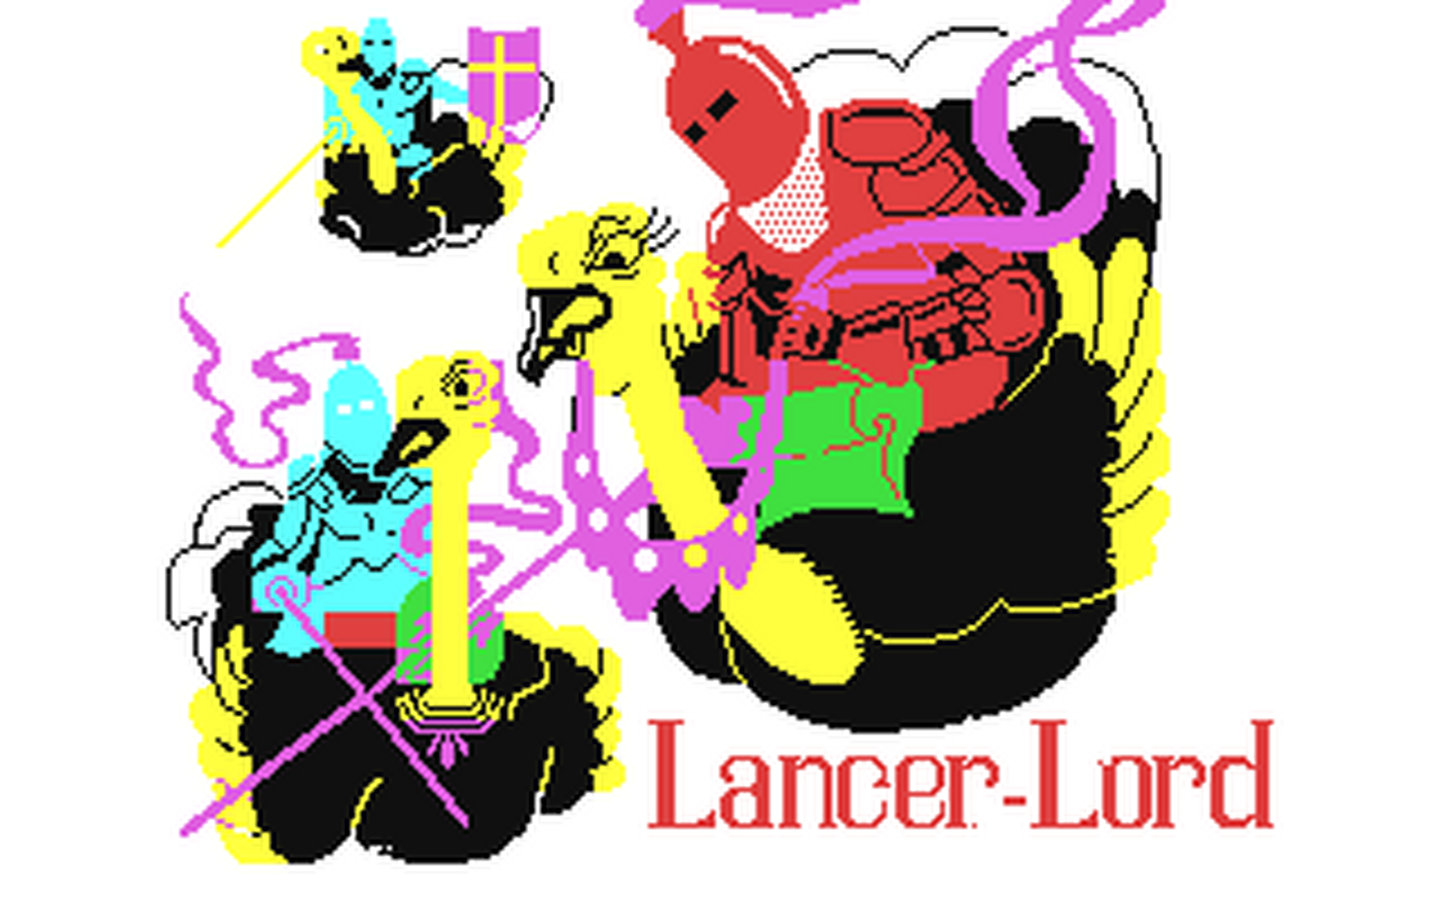 C64 GameBase Lancer-Lord Rabbit_Software 1983